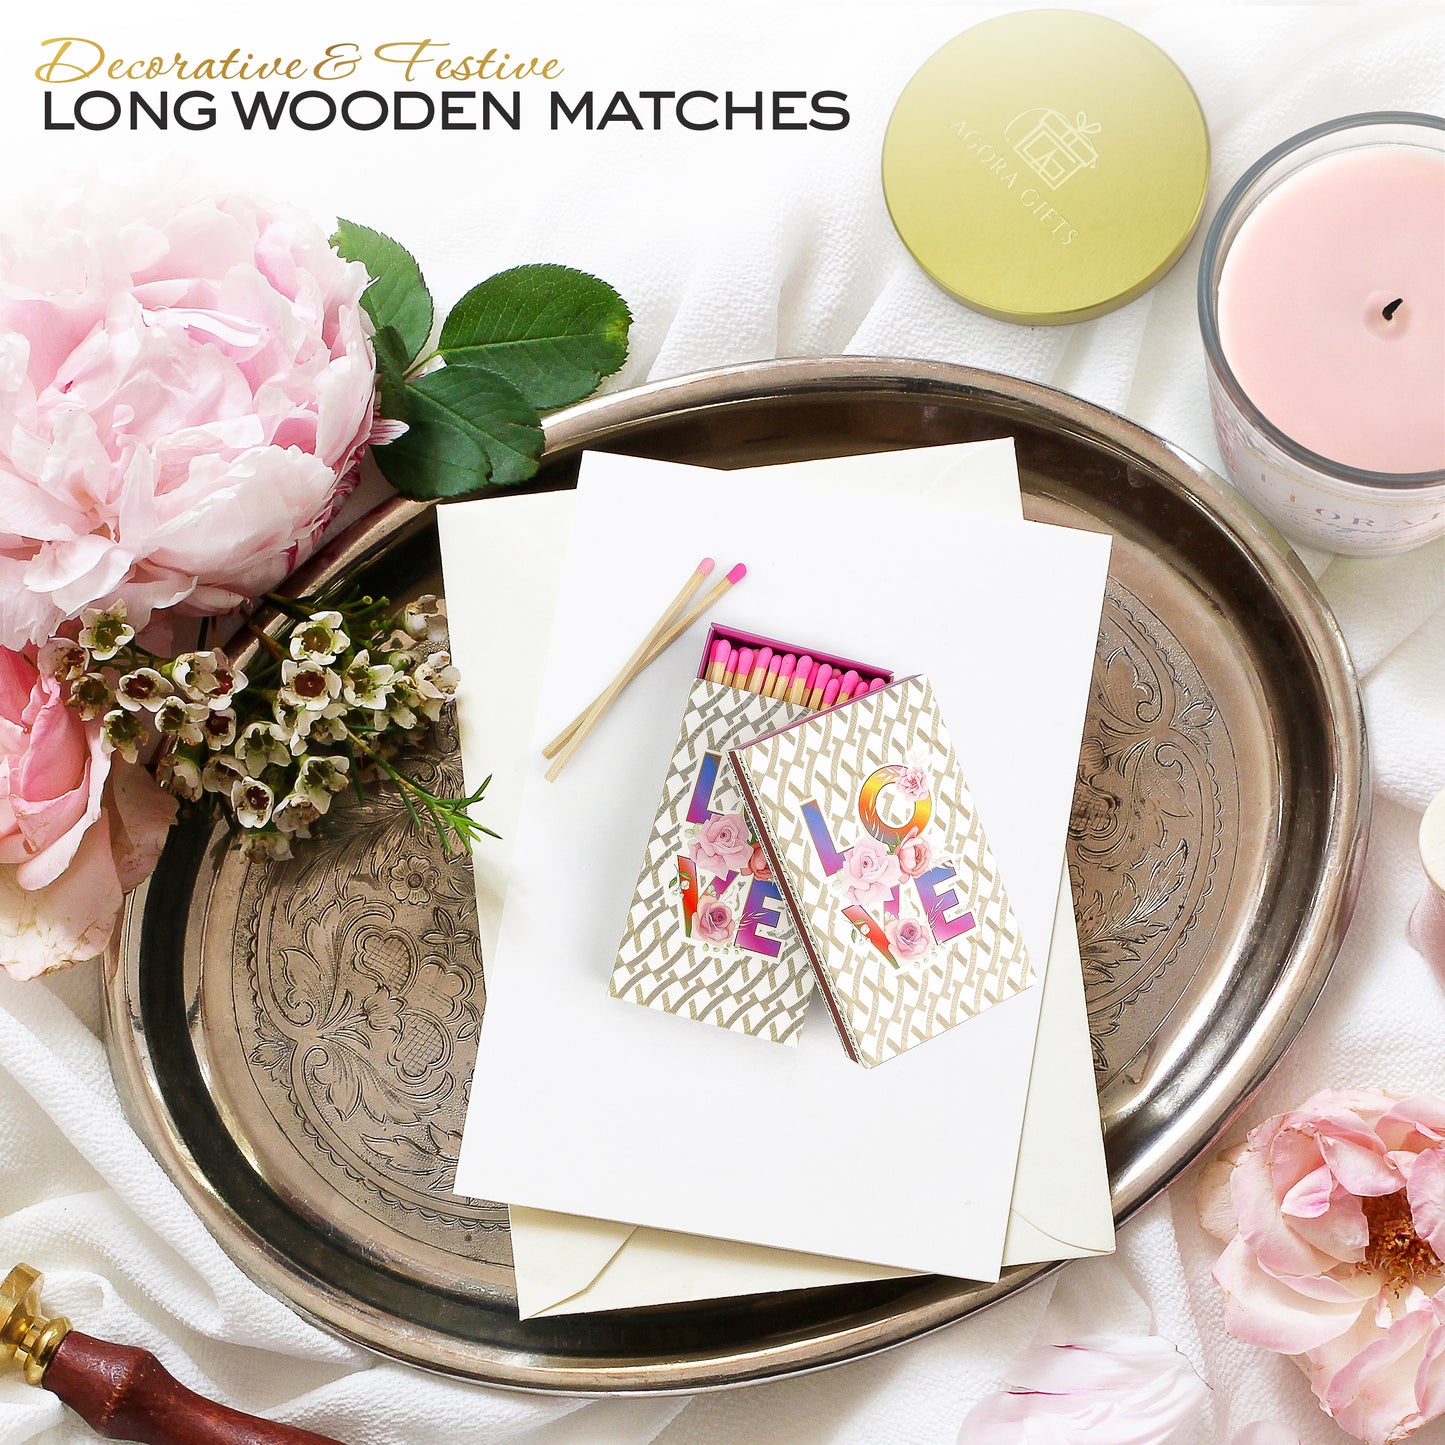 Love Design Match Box Contains 50 Wooden Matchsticks 4" Length